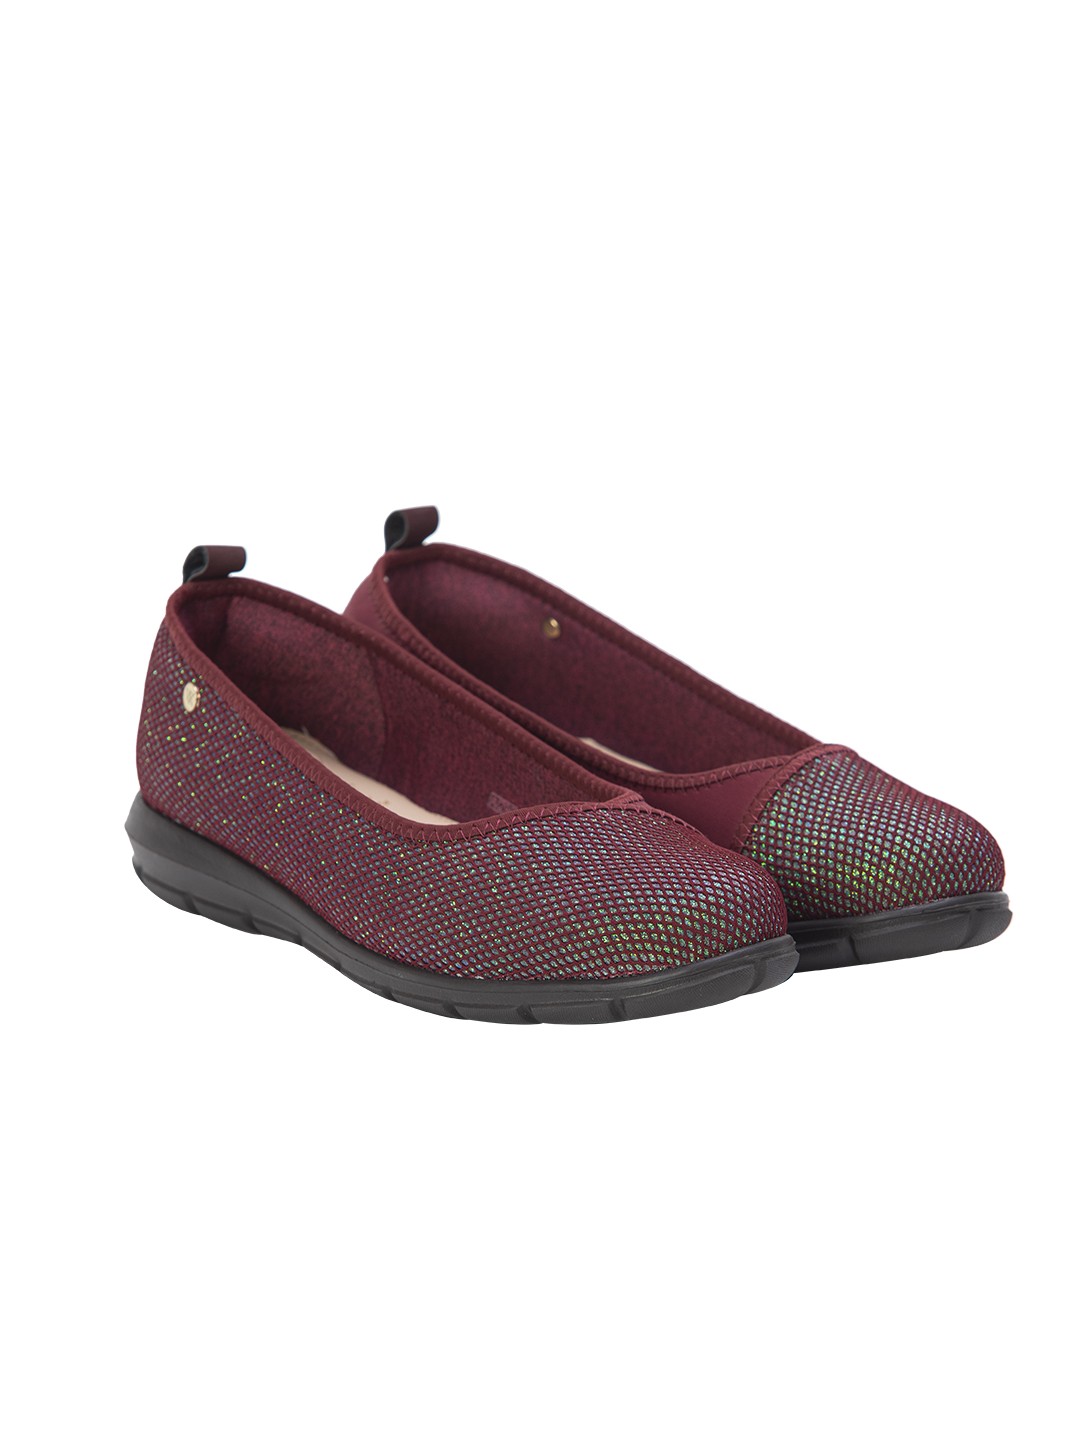 Buy Von Wellx Germany Comfort Pace Mehroon Casual Shoes Online in Dehradun